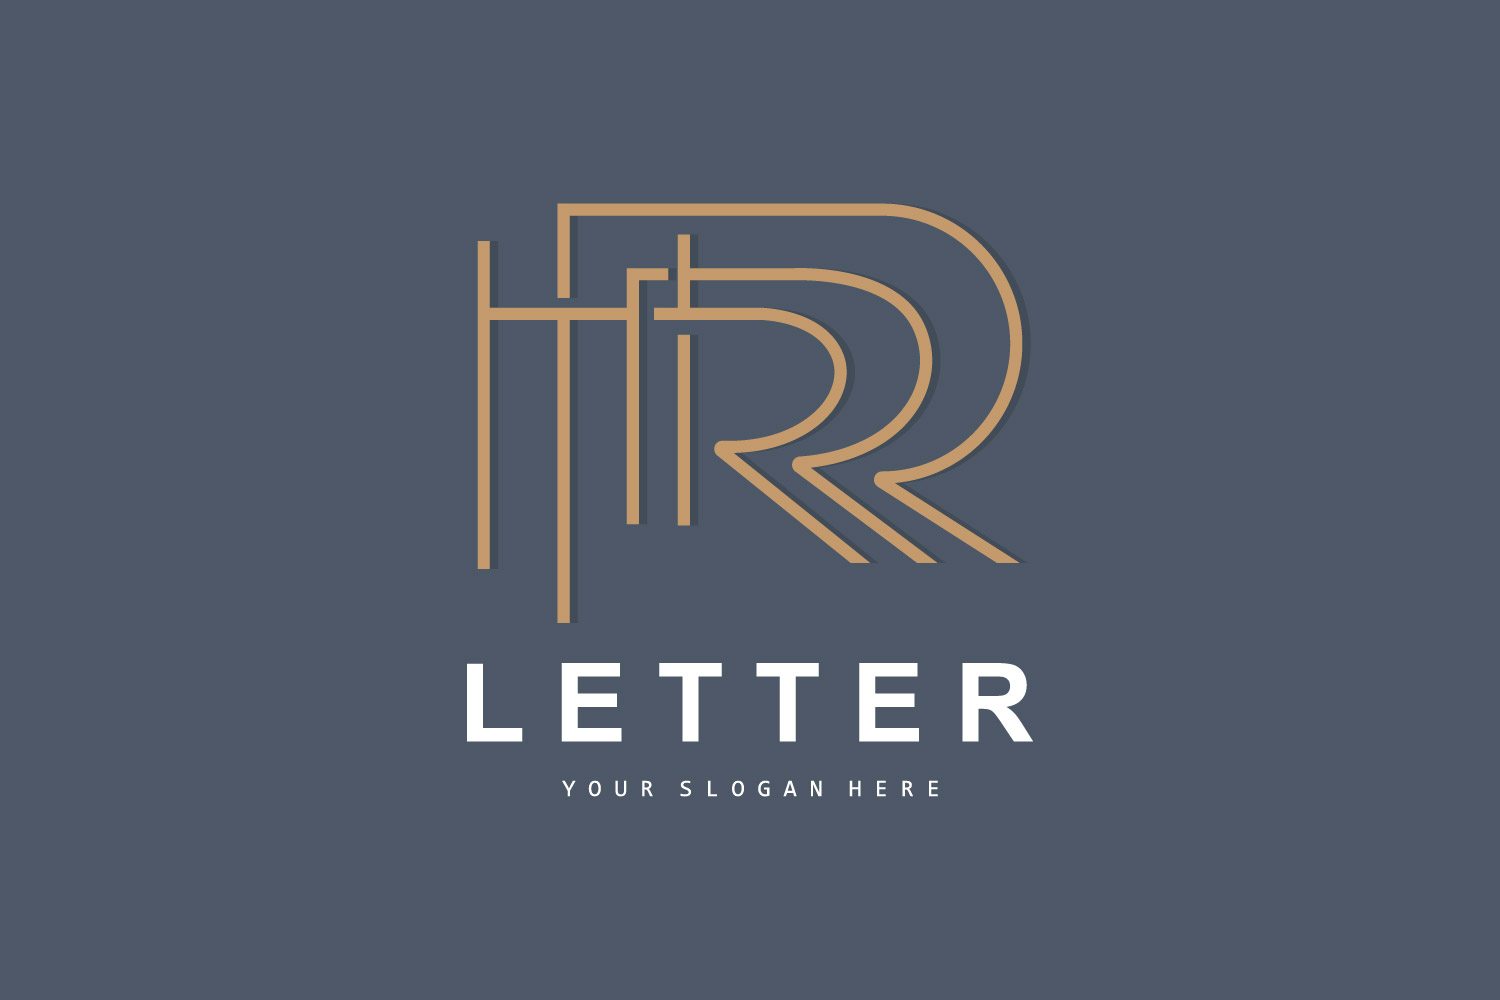 R Letter Logo Logotype Vector V3